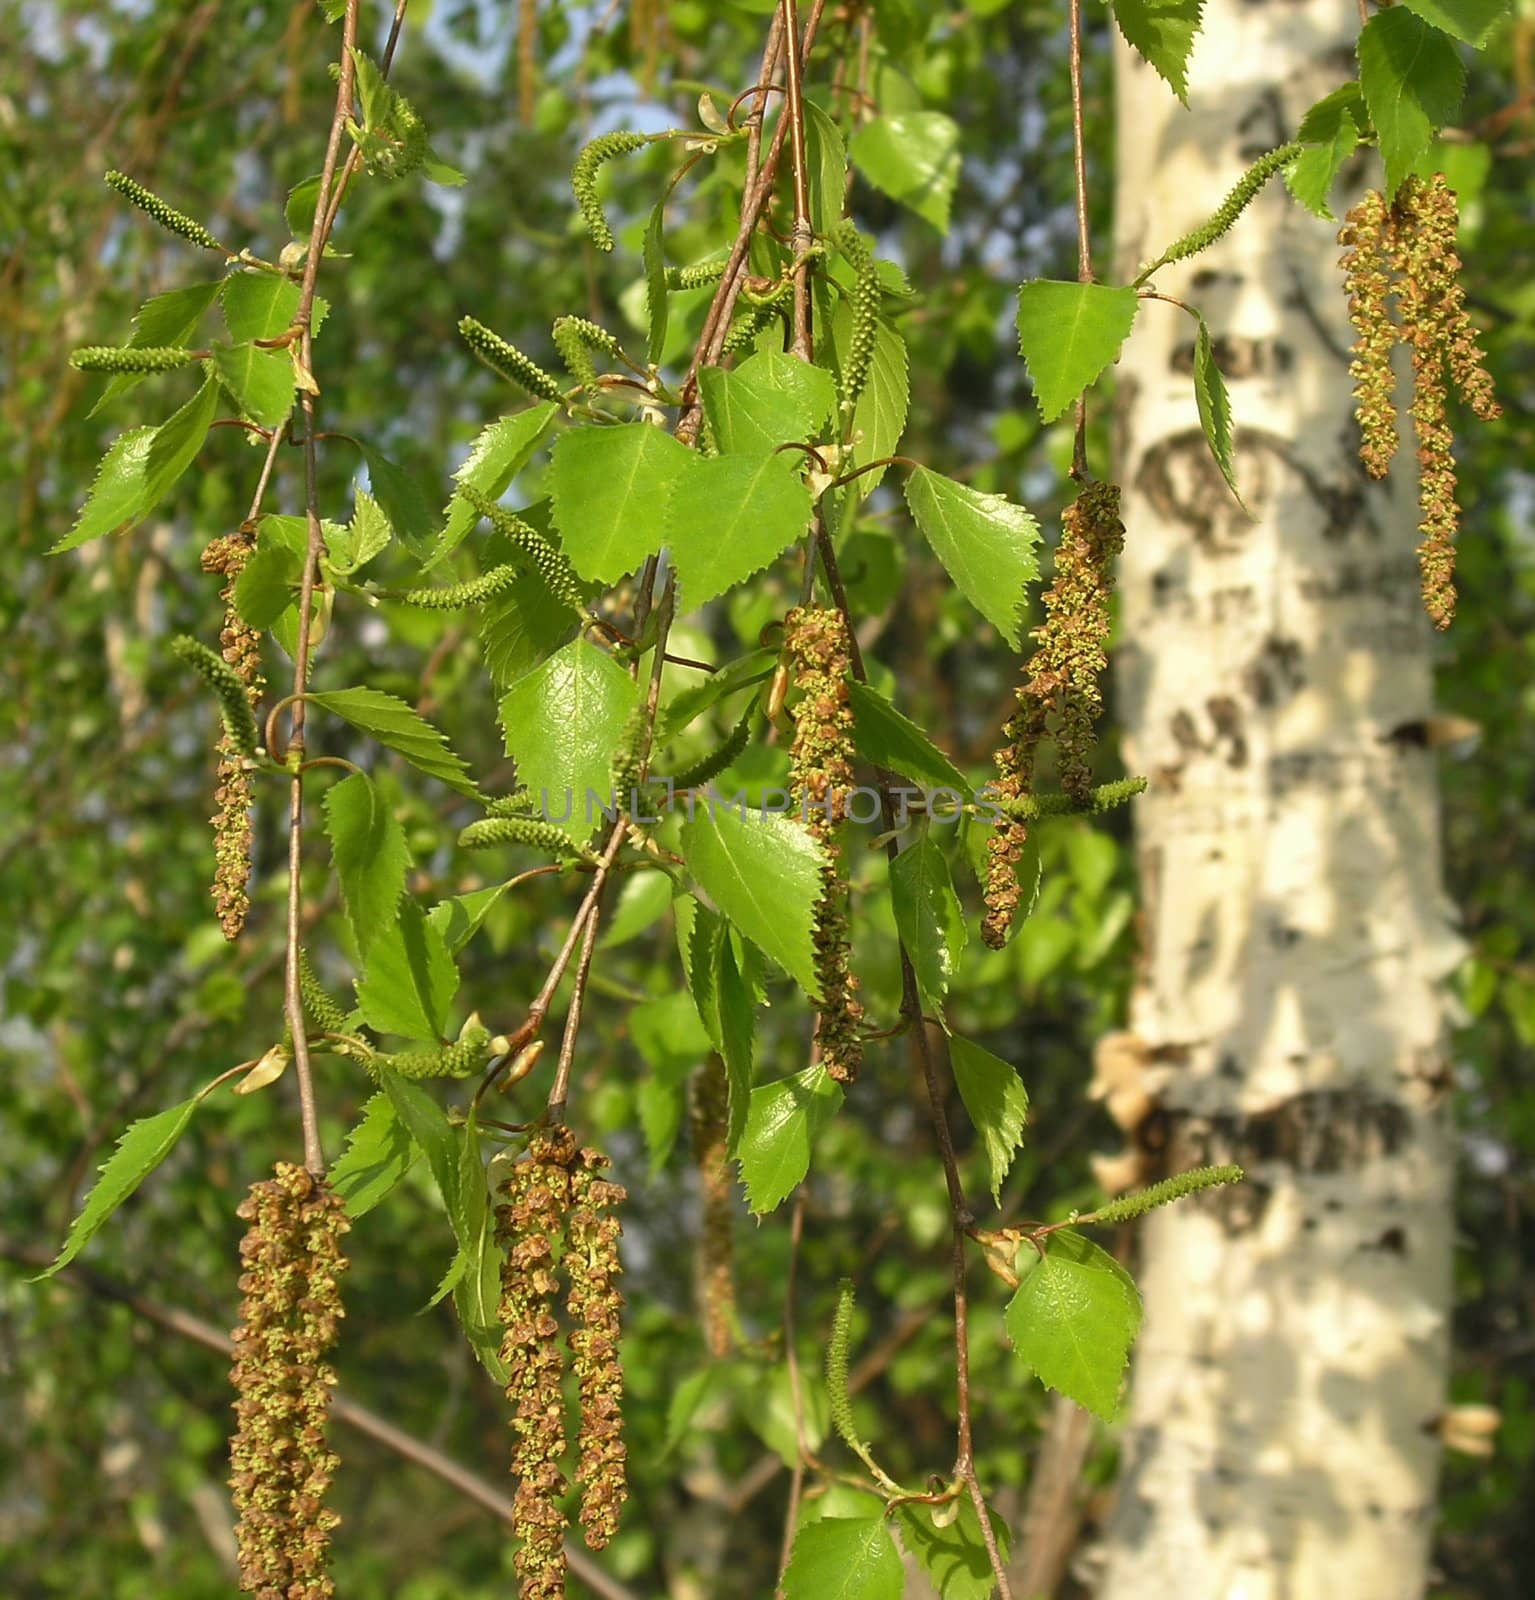 Seeds of a birch